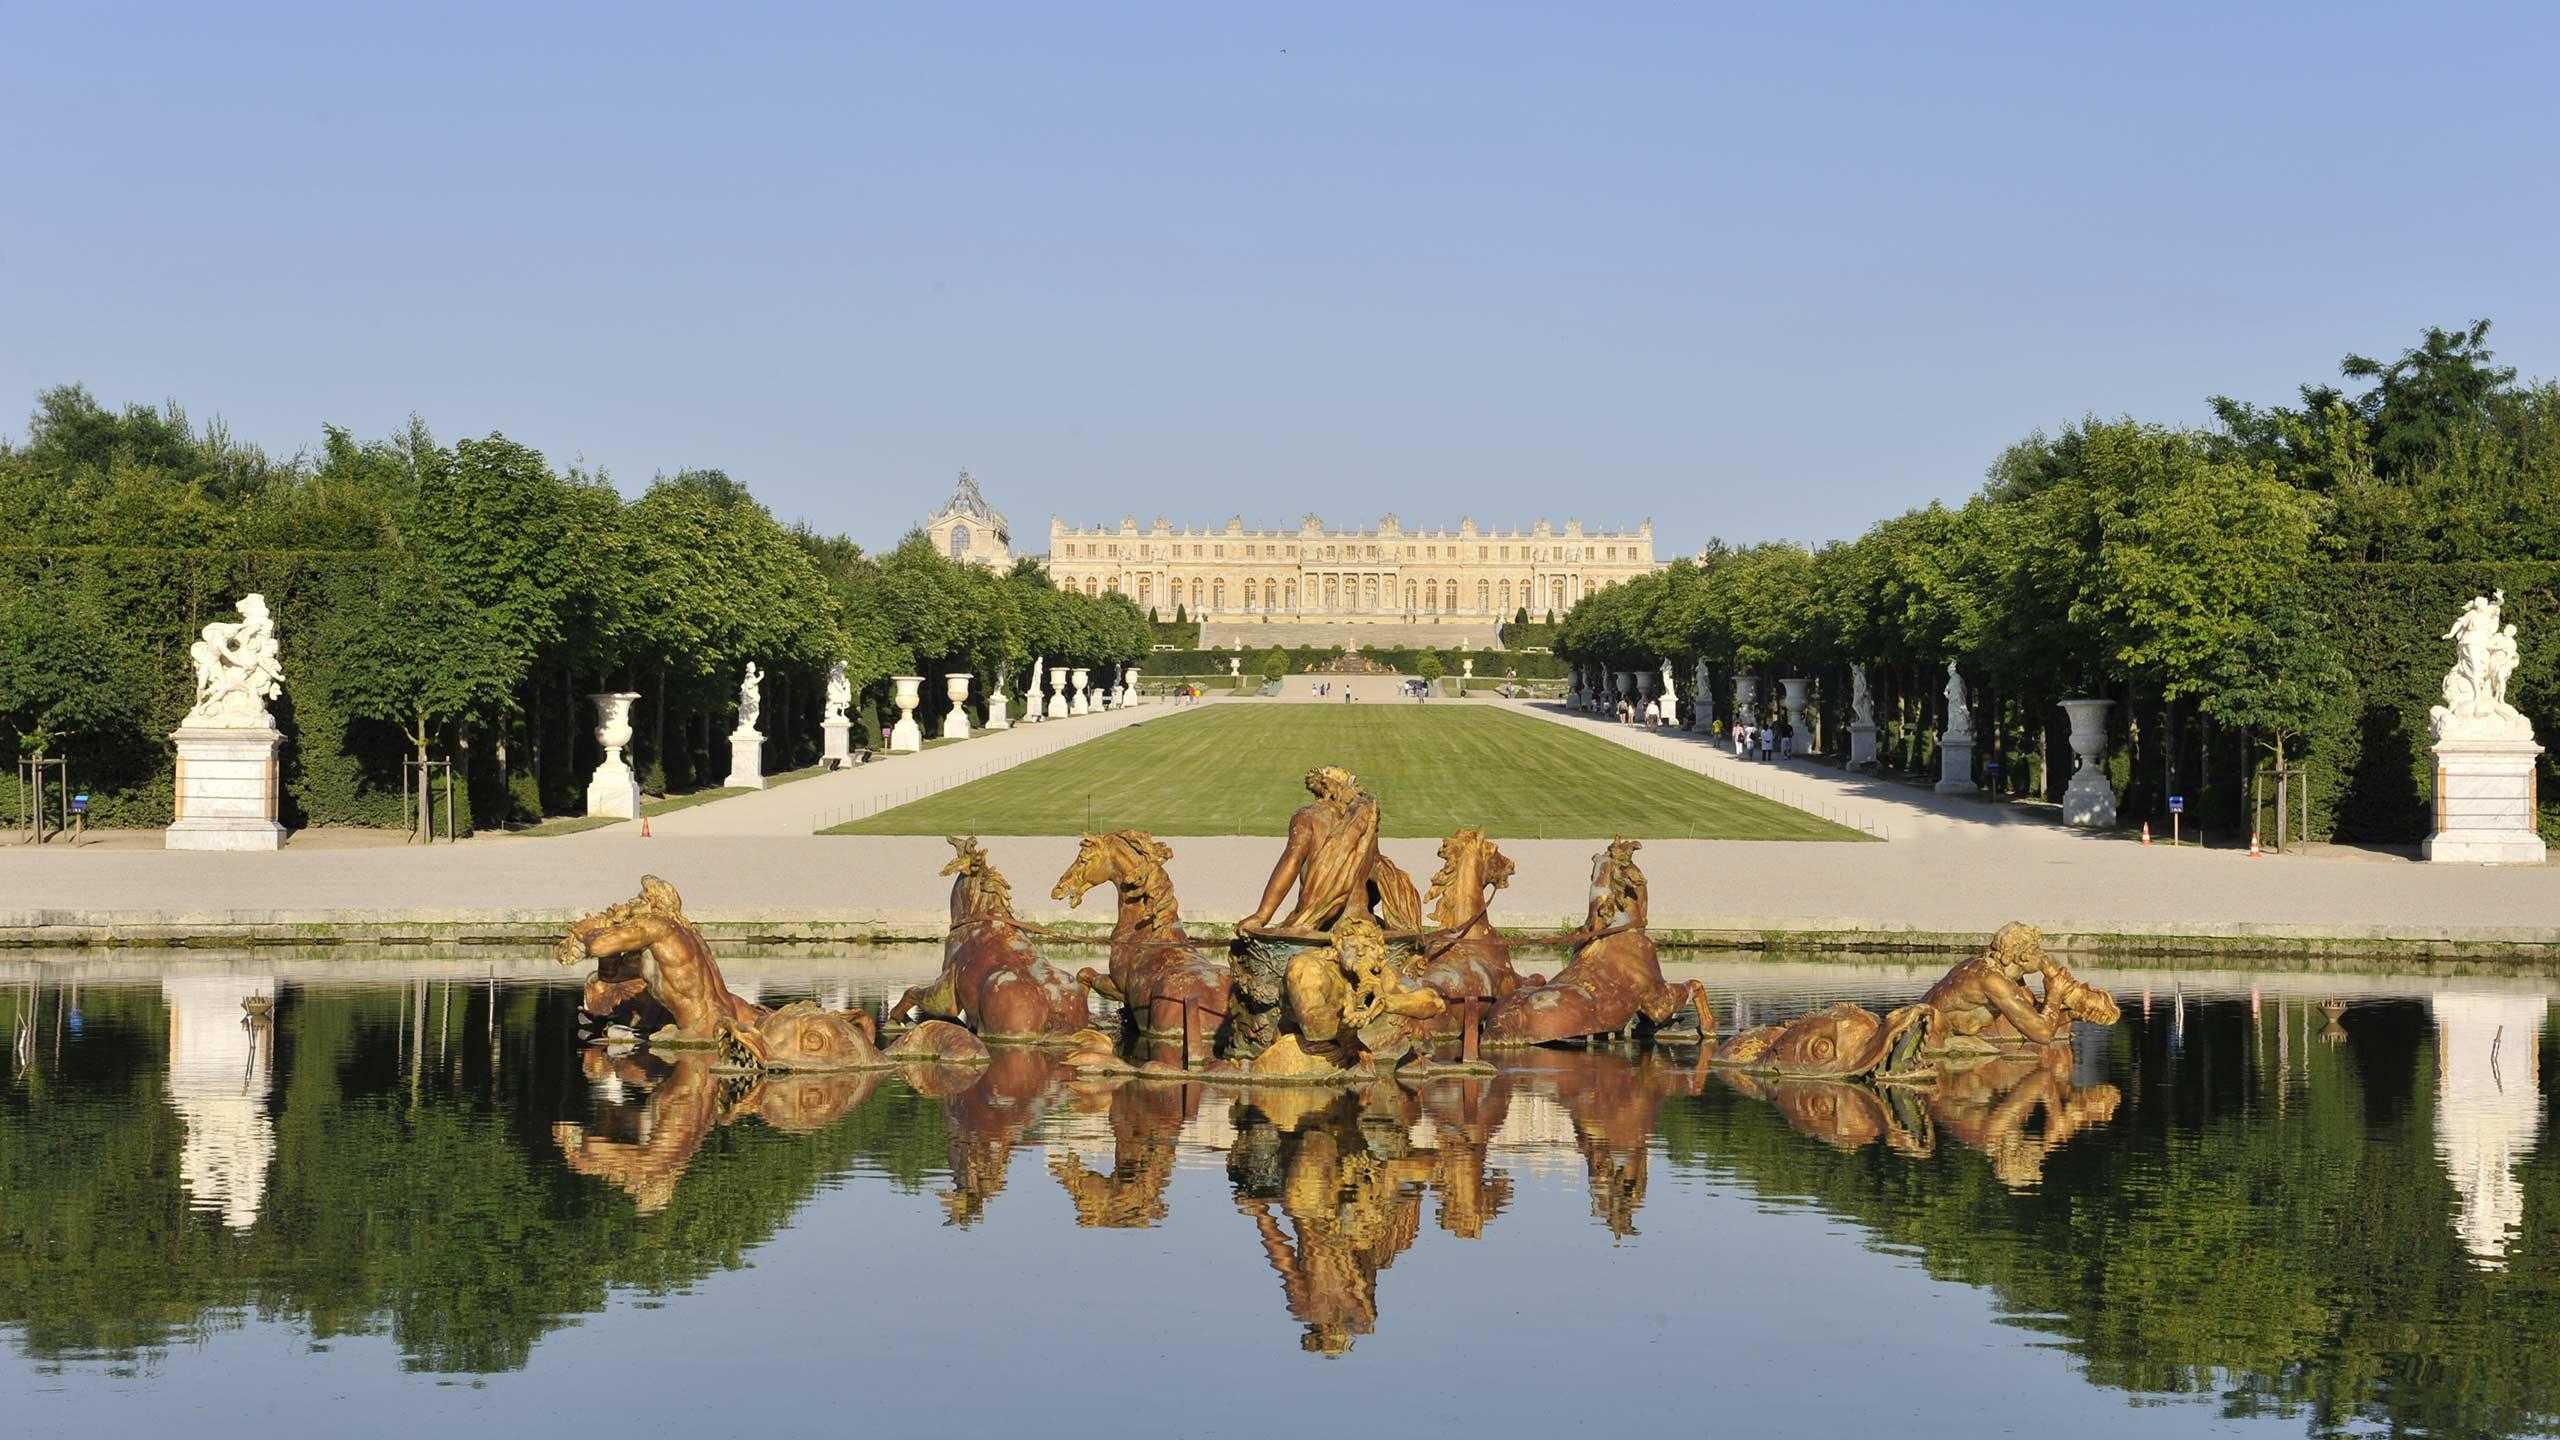 Chateau de versailles. Версаль Париж. Франция достопримечательности Версаль. Версальский дворец и парк. Версальский дворец в Париже.